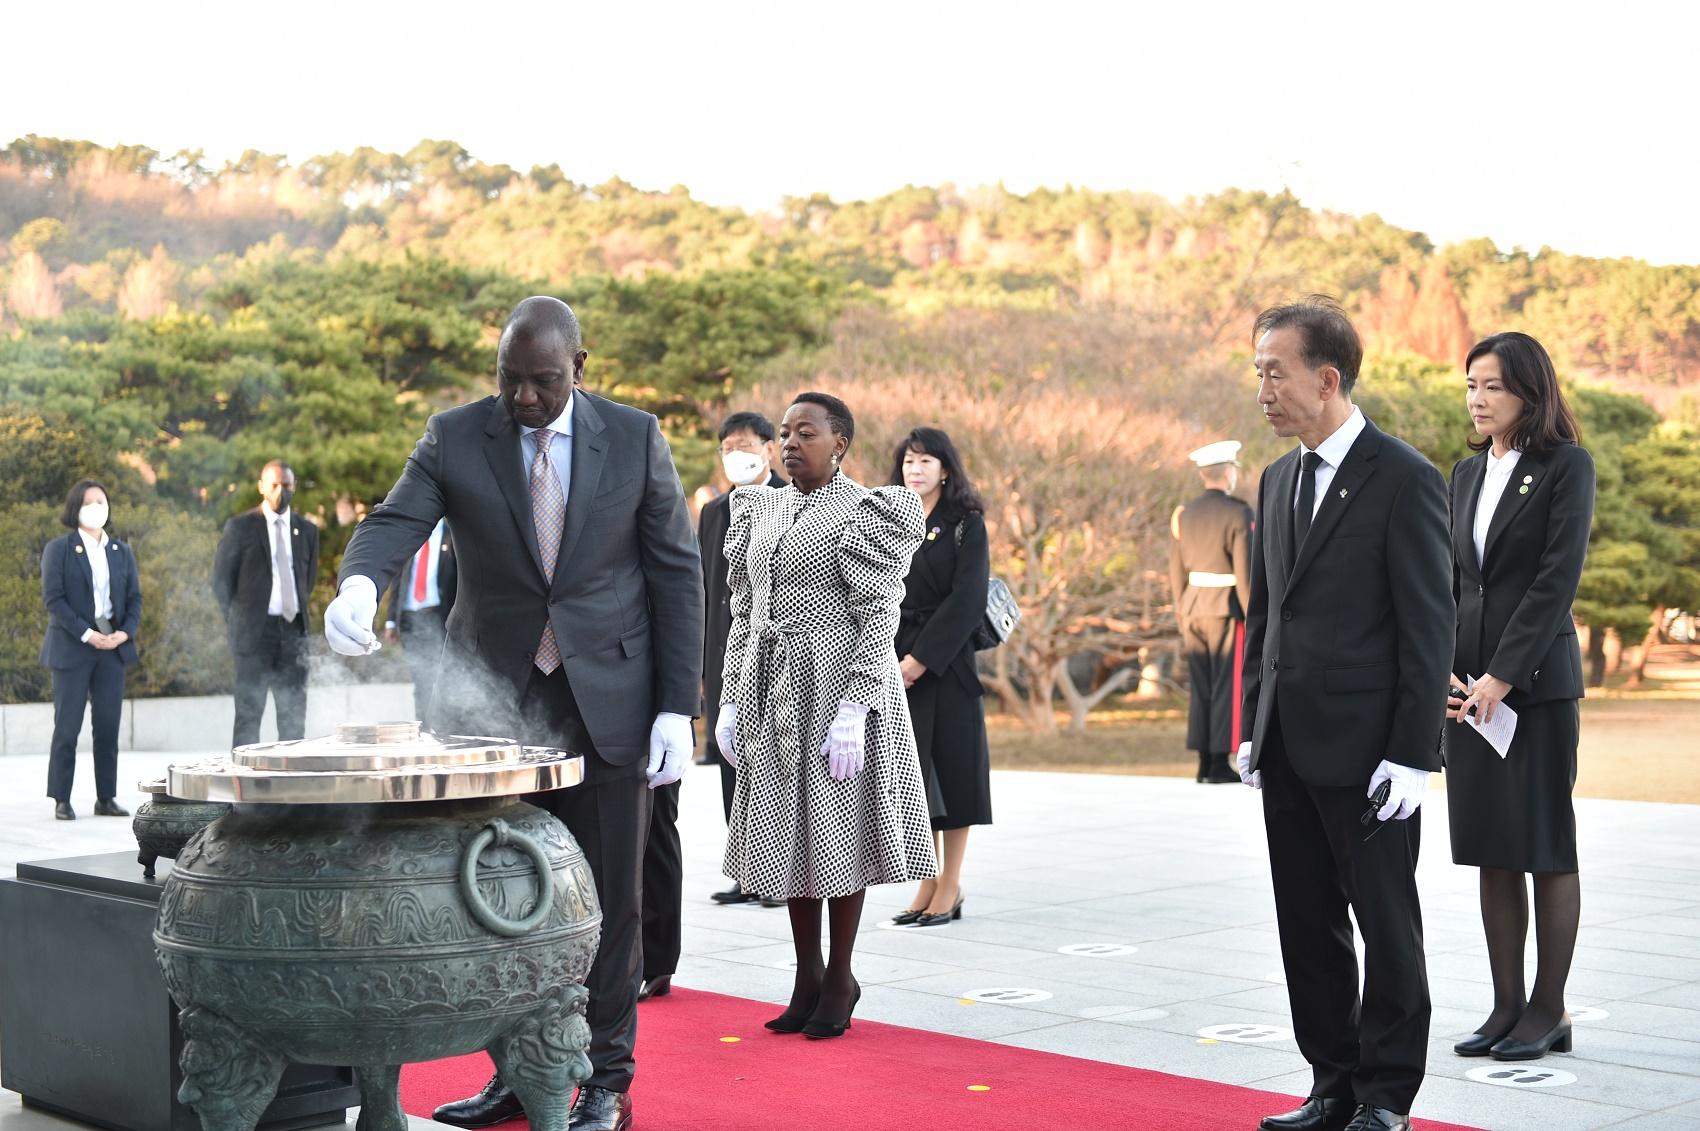 윌리엄 루토 케냐 대통령 참배 (2022. 11. 23.) 대표이미지